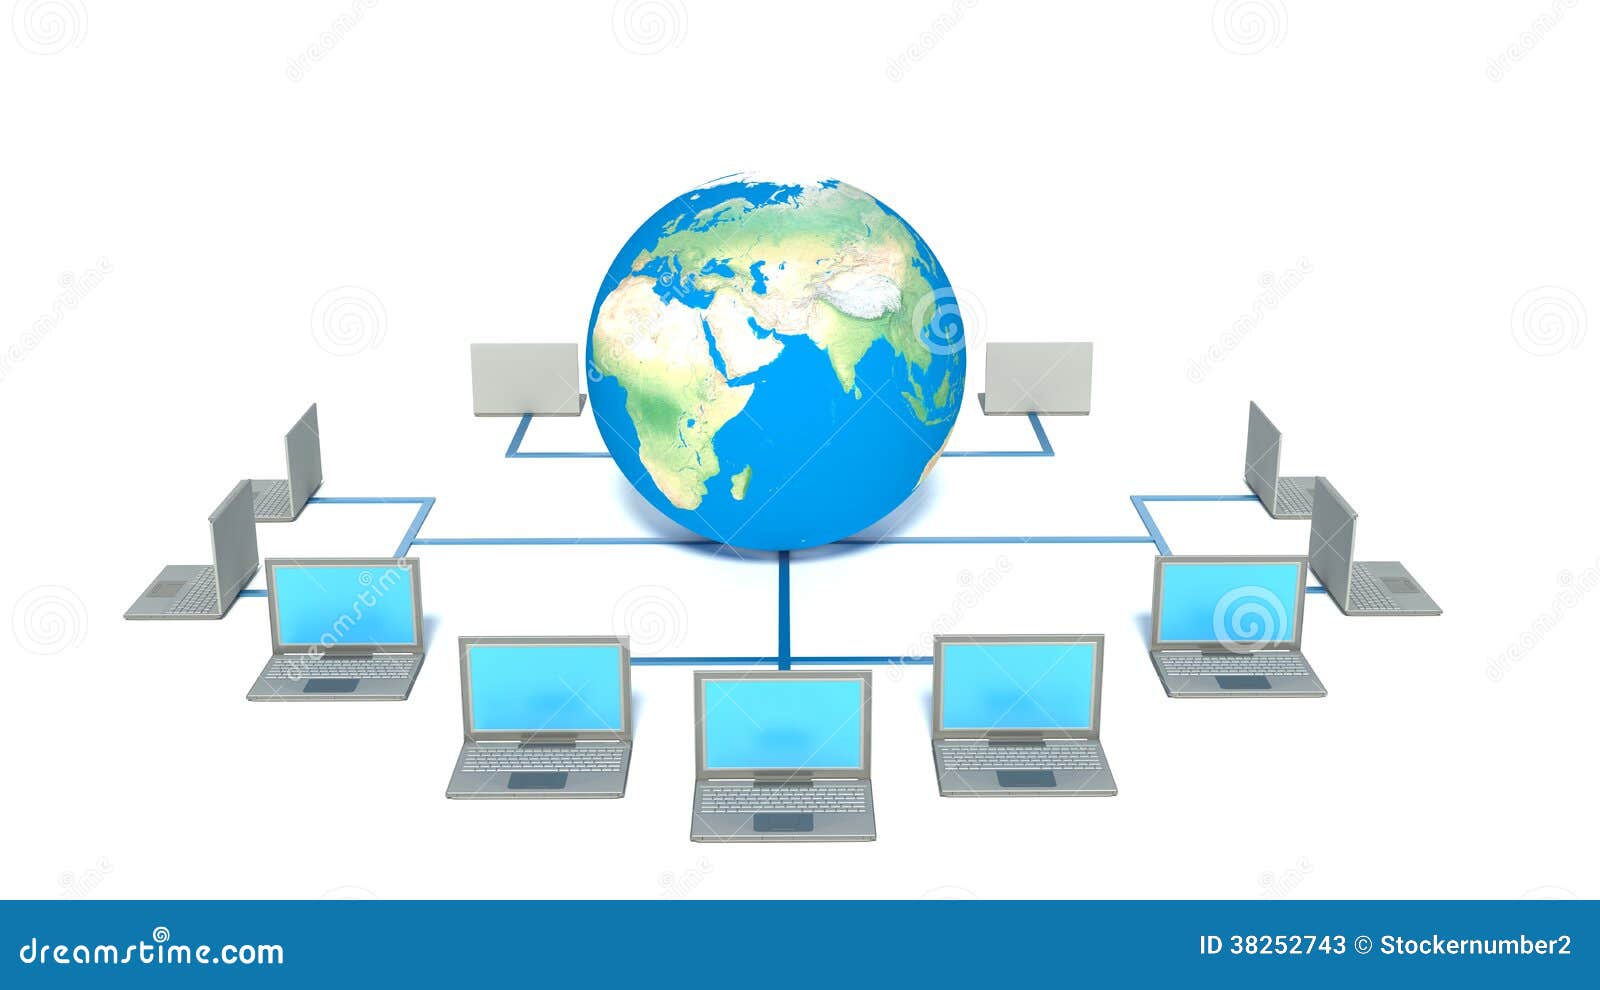 Всемирная компьютерная сеть интернет вариант 1. Глобальная компьютерная сеть. Стенд Глобальная компьютерная сеть. Глобал сеть. Страна Информатика картинки.